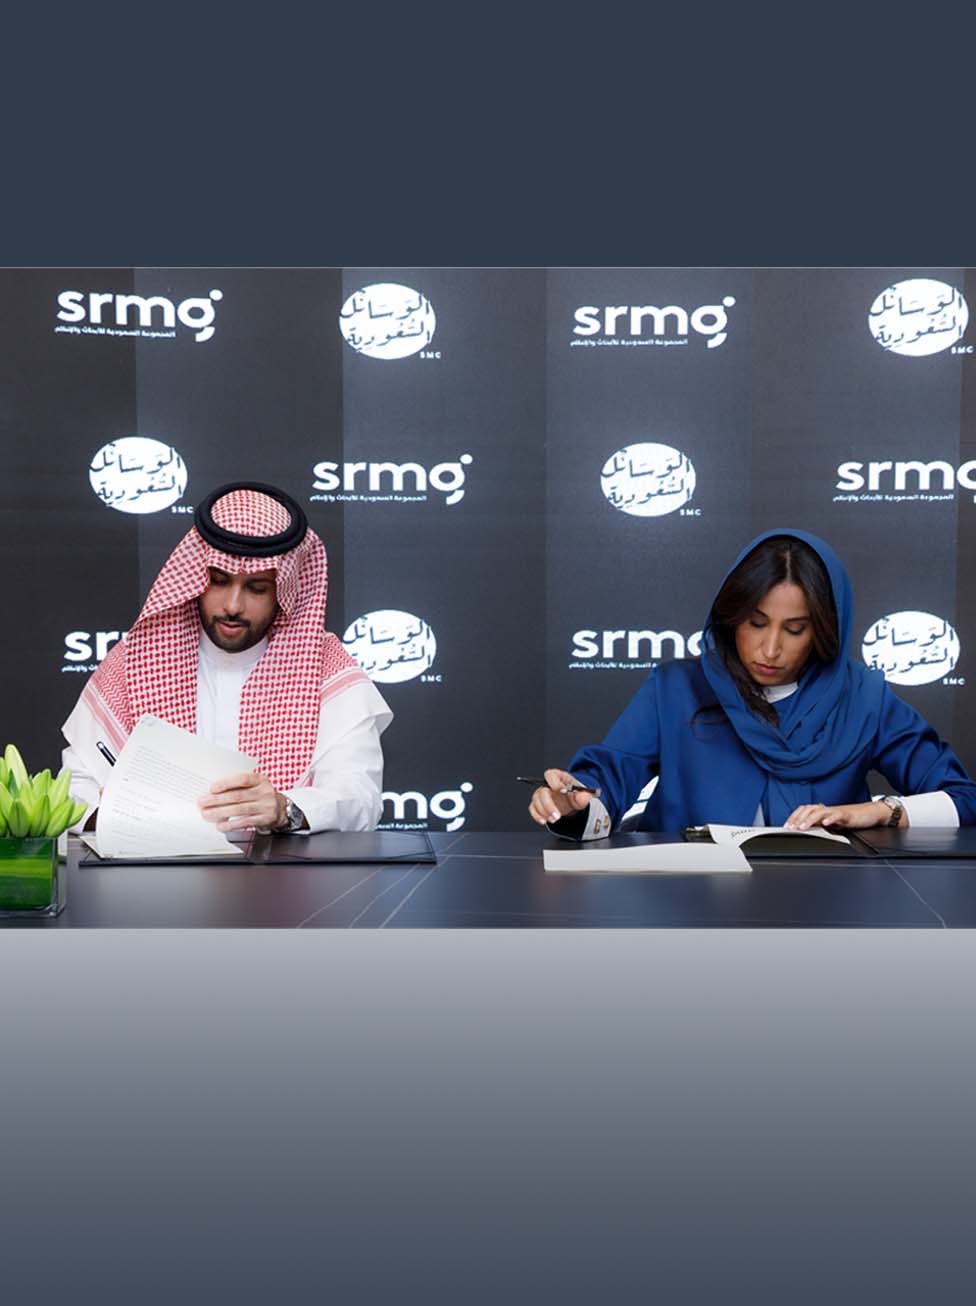 المجموعة السعودية للأبحاث والإعلام (SRMG) تُعيِّن شركة الوسائل السعودية (SMC)  وكيلاً إعلانياً حصرياً